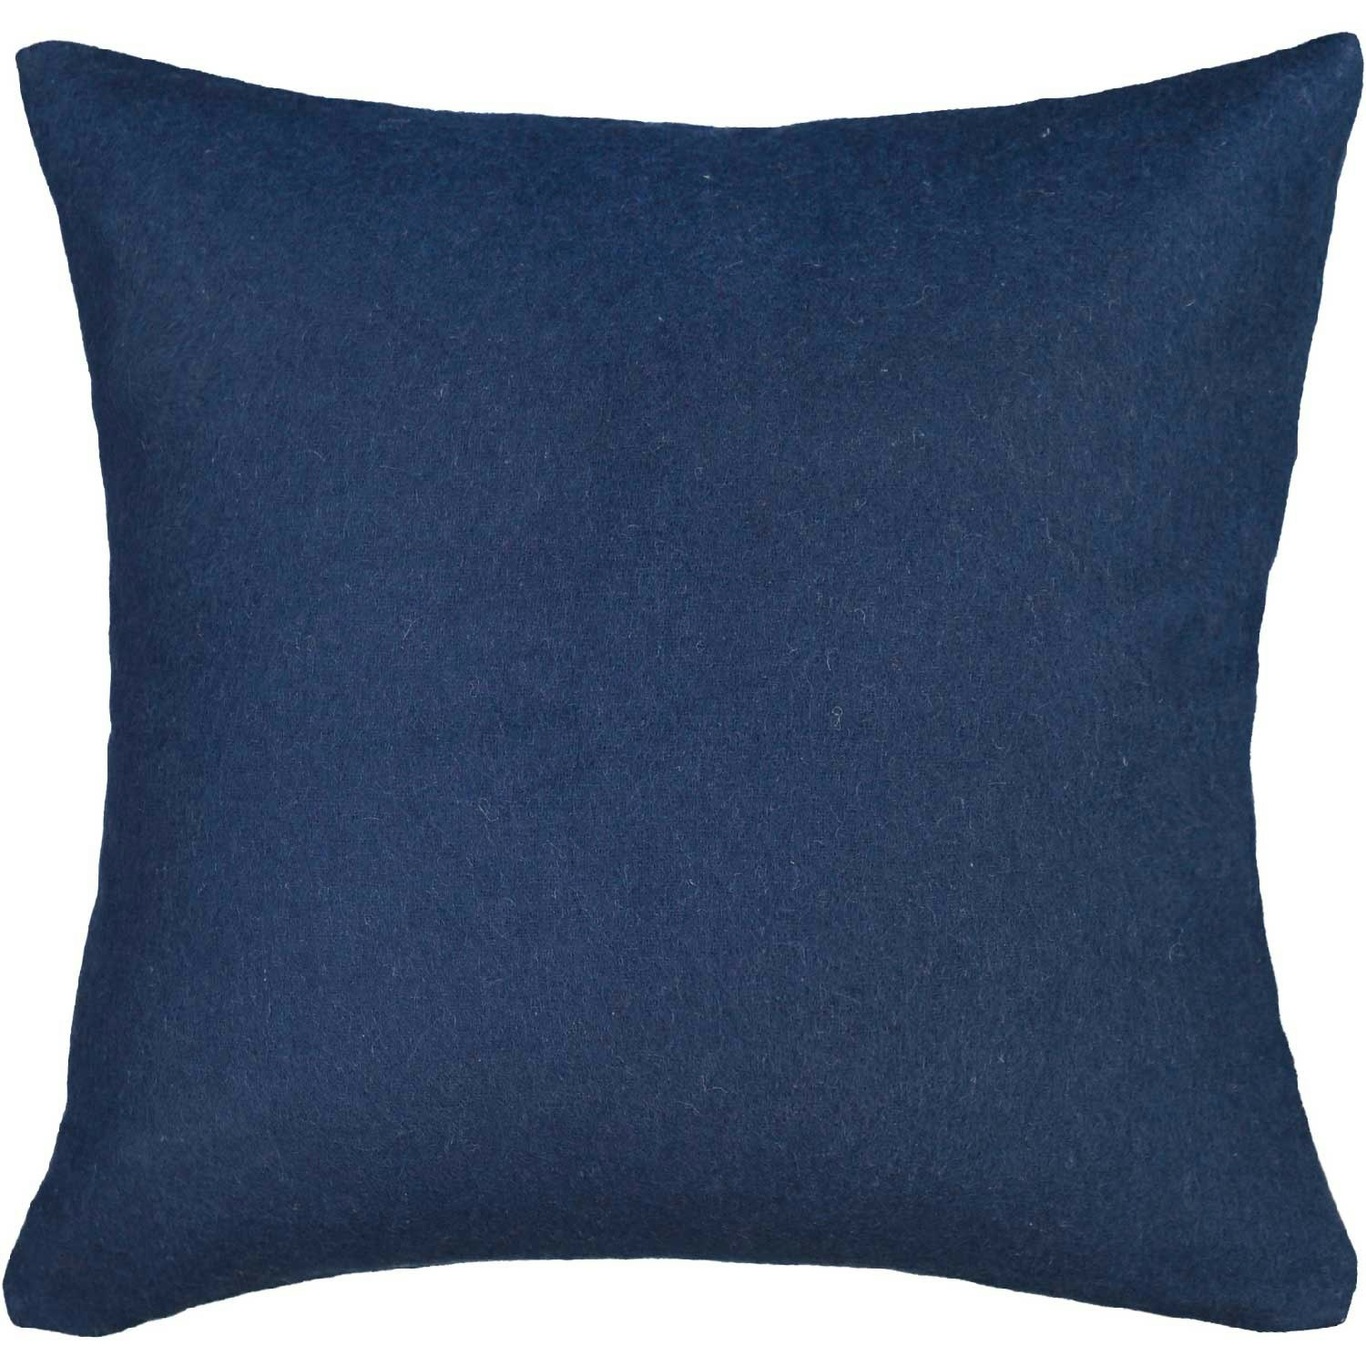 엘방 Classic 쿠션 커버 50x50 cm 다크 블루 Elvang Classic Cushion Cover 50x50 cm  Dark Blue 06272